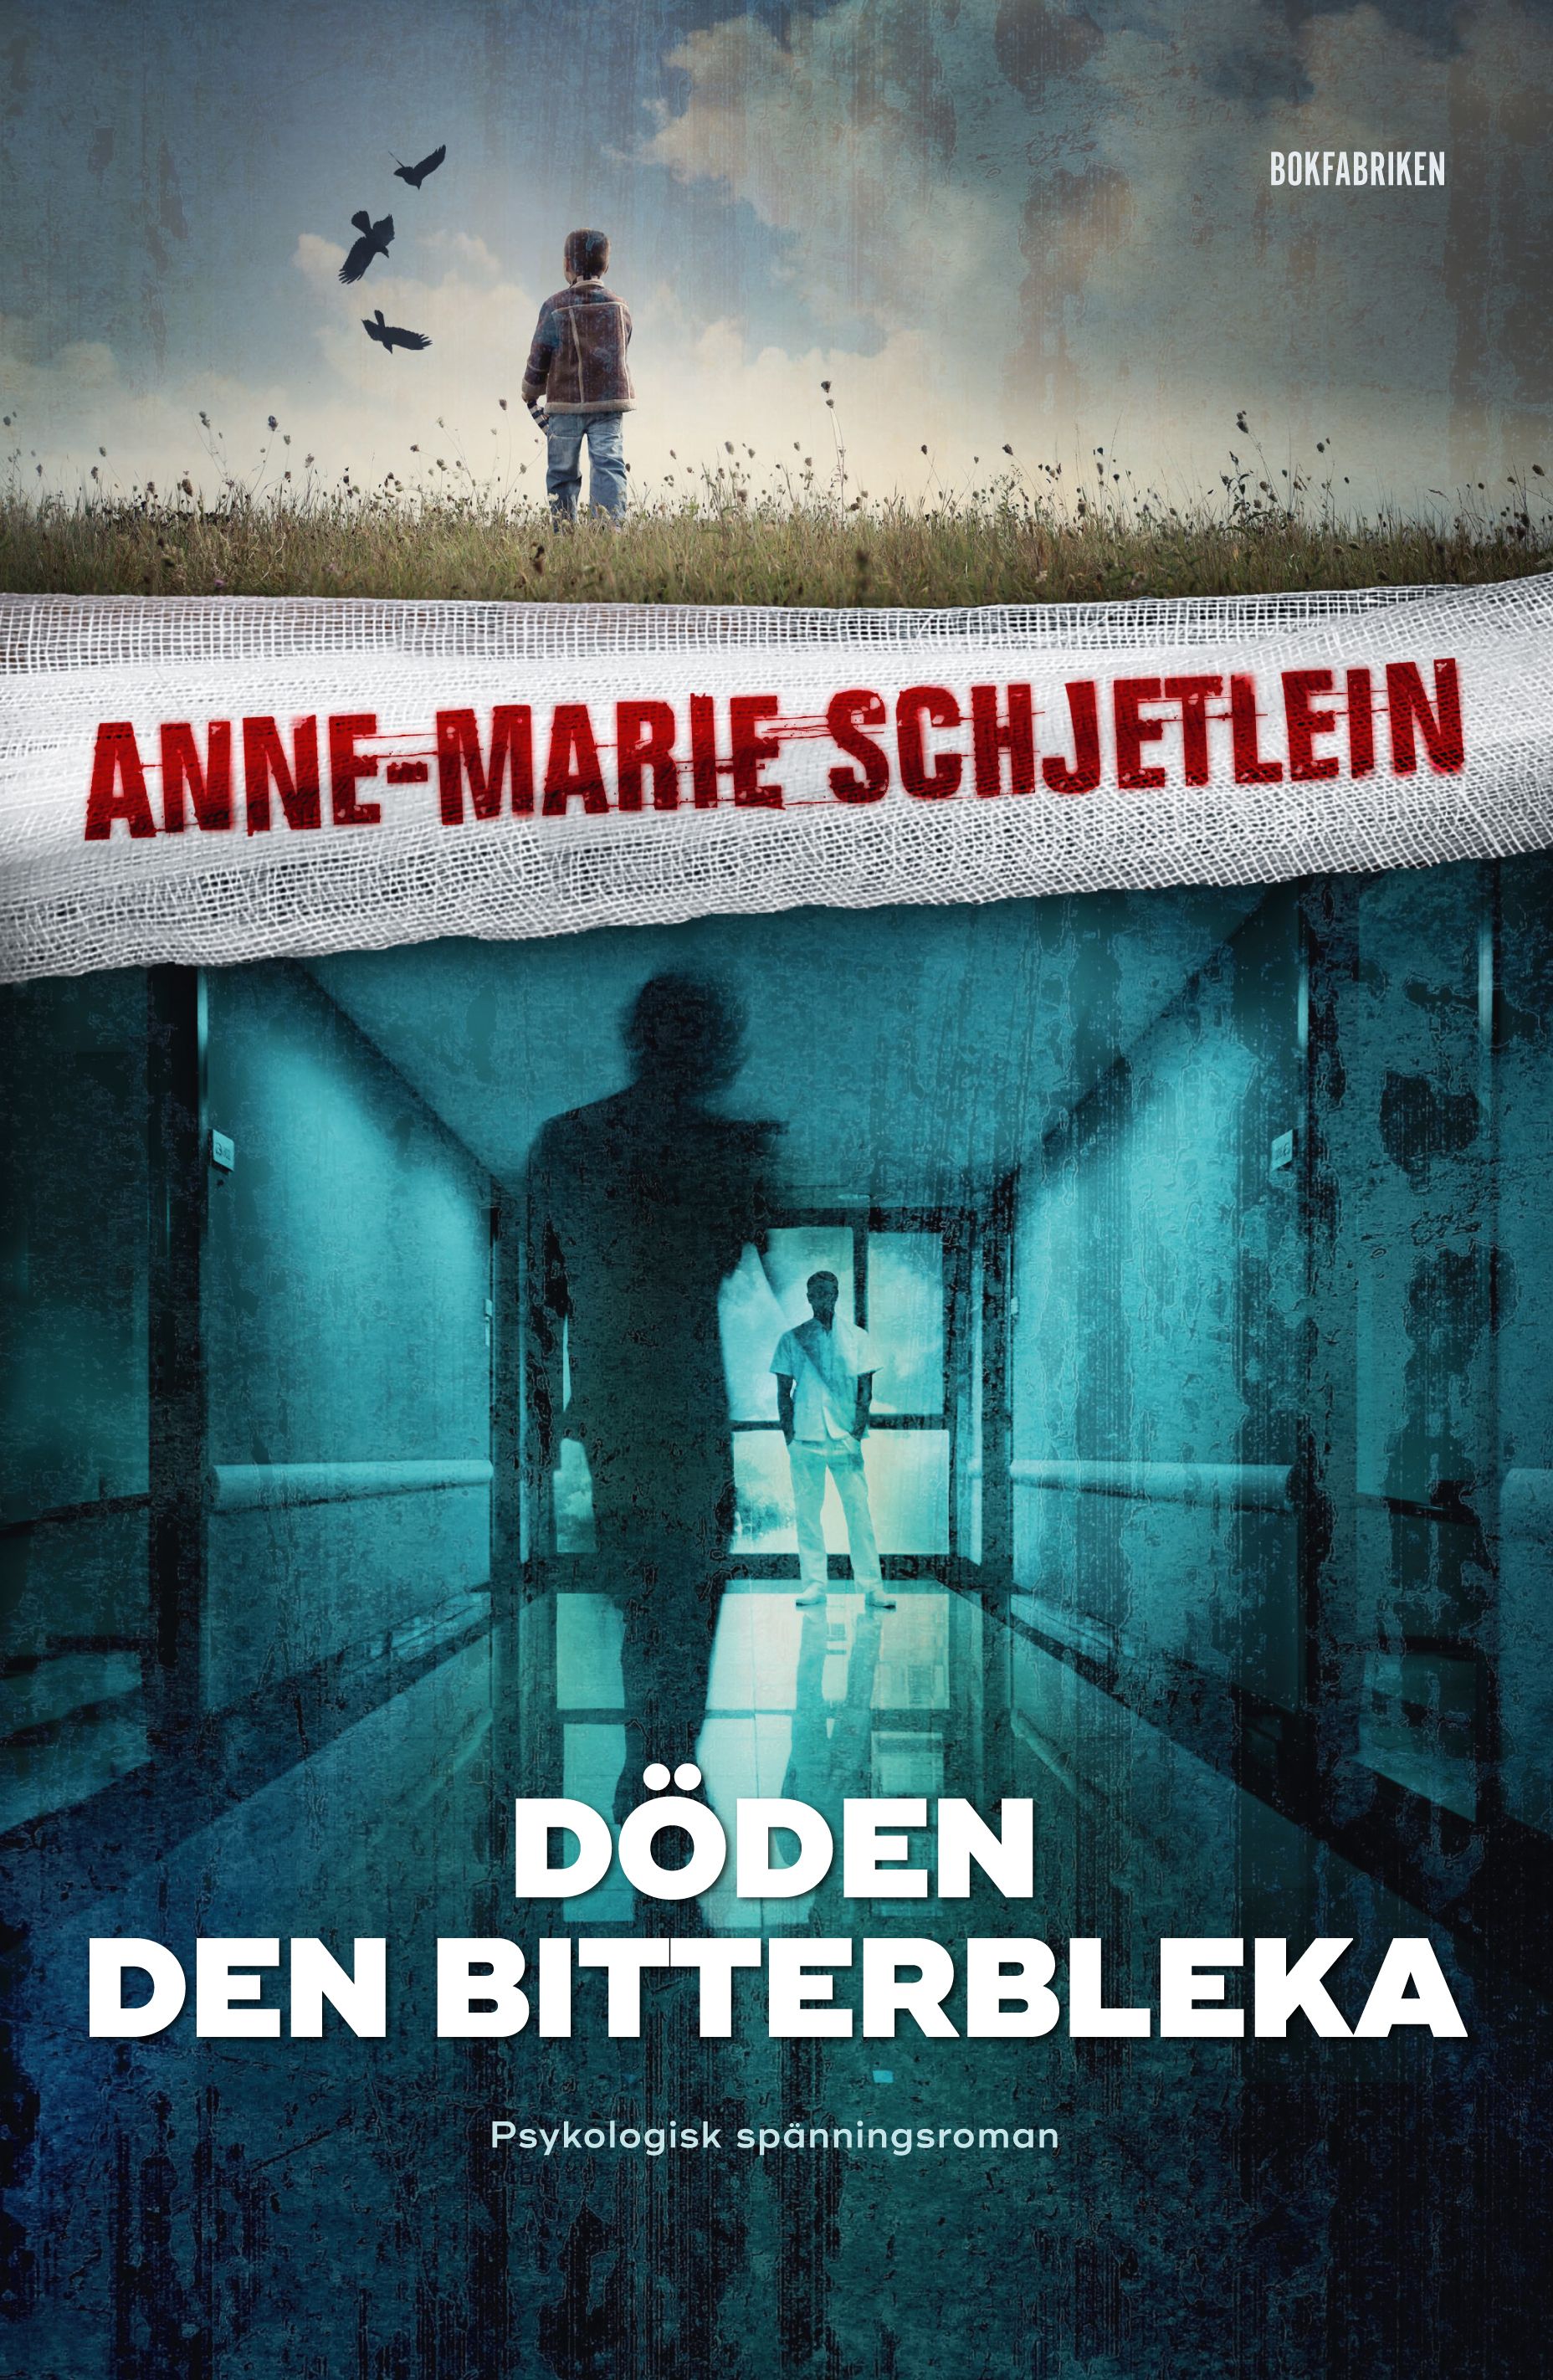 Döden den bitterbleka, e-bok av Anne-Marie Schjetlein